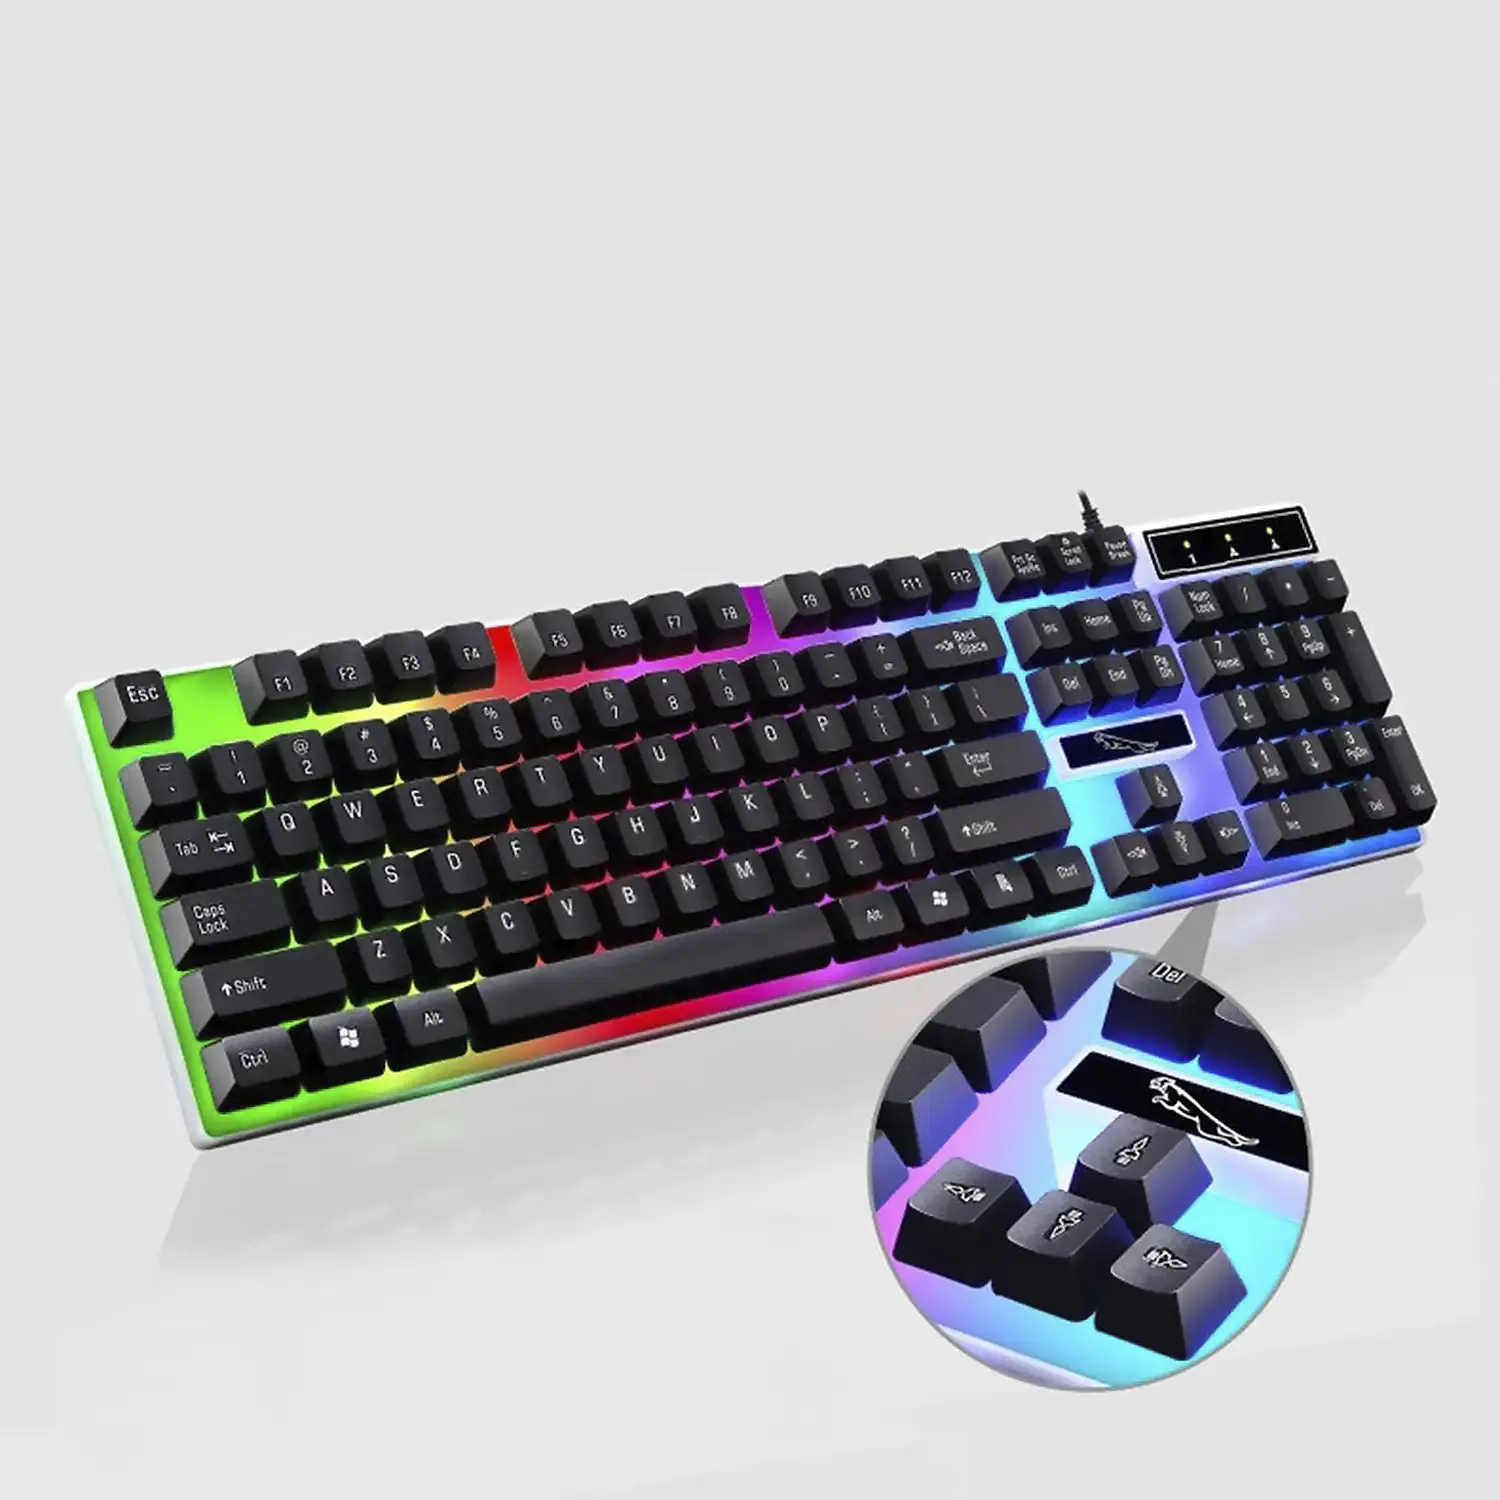 Pack gaming G21B de teclado y ratón con luces RGB.